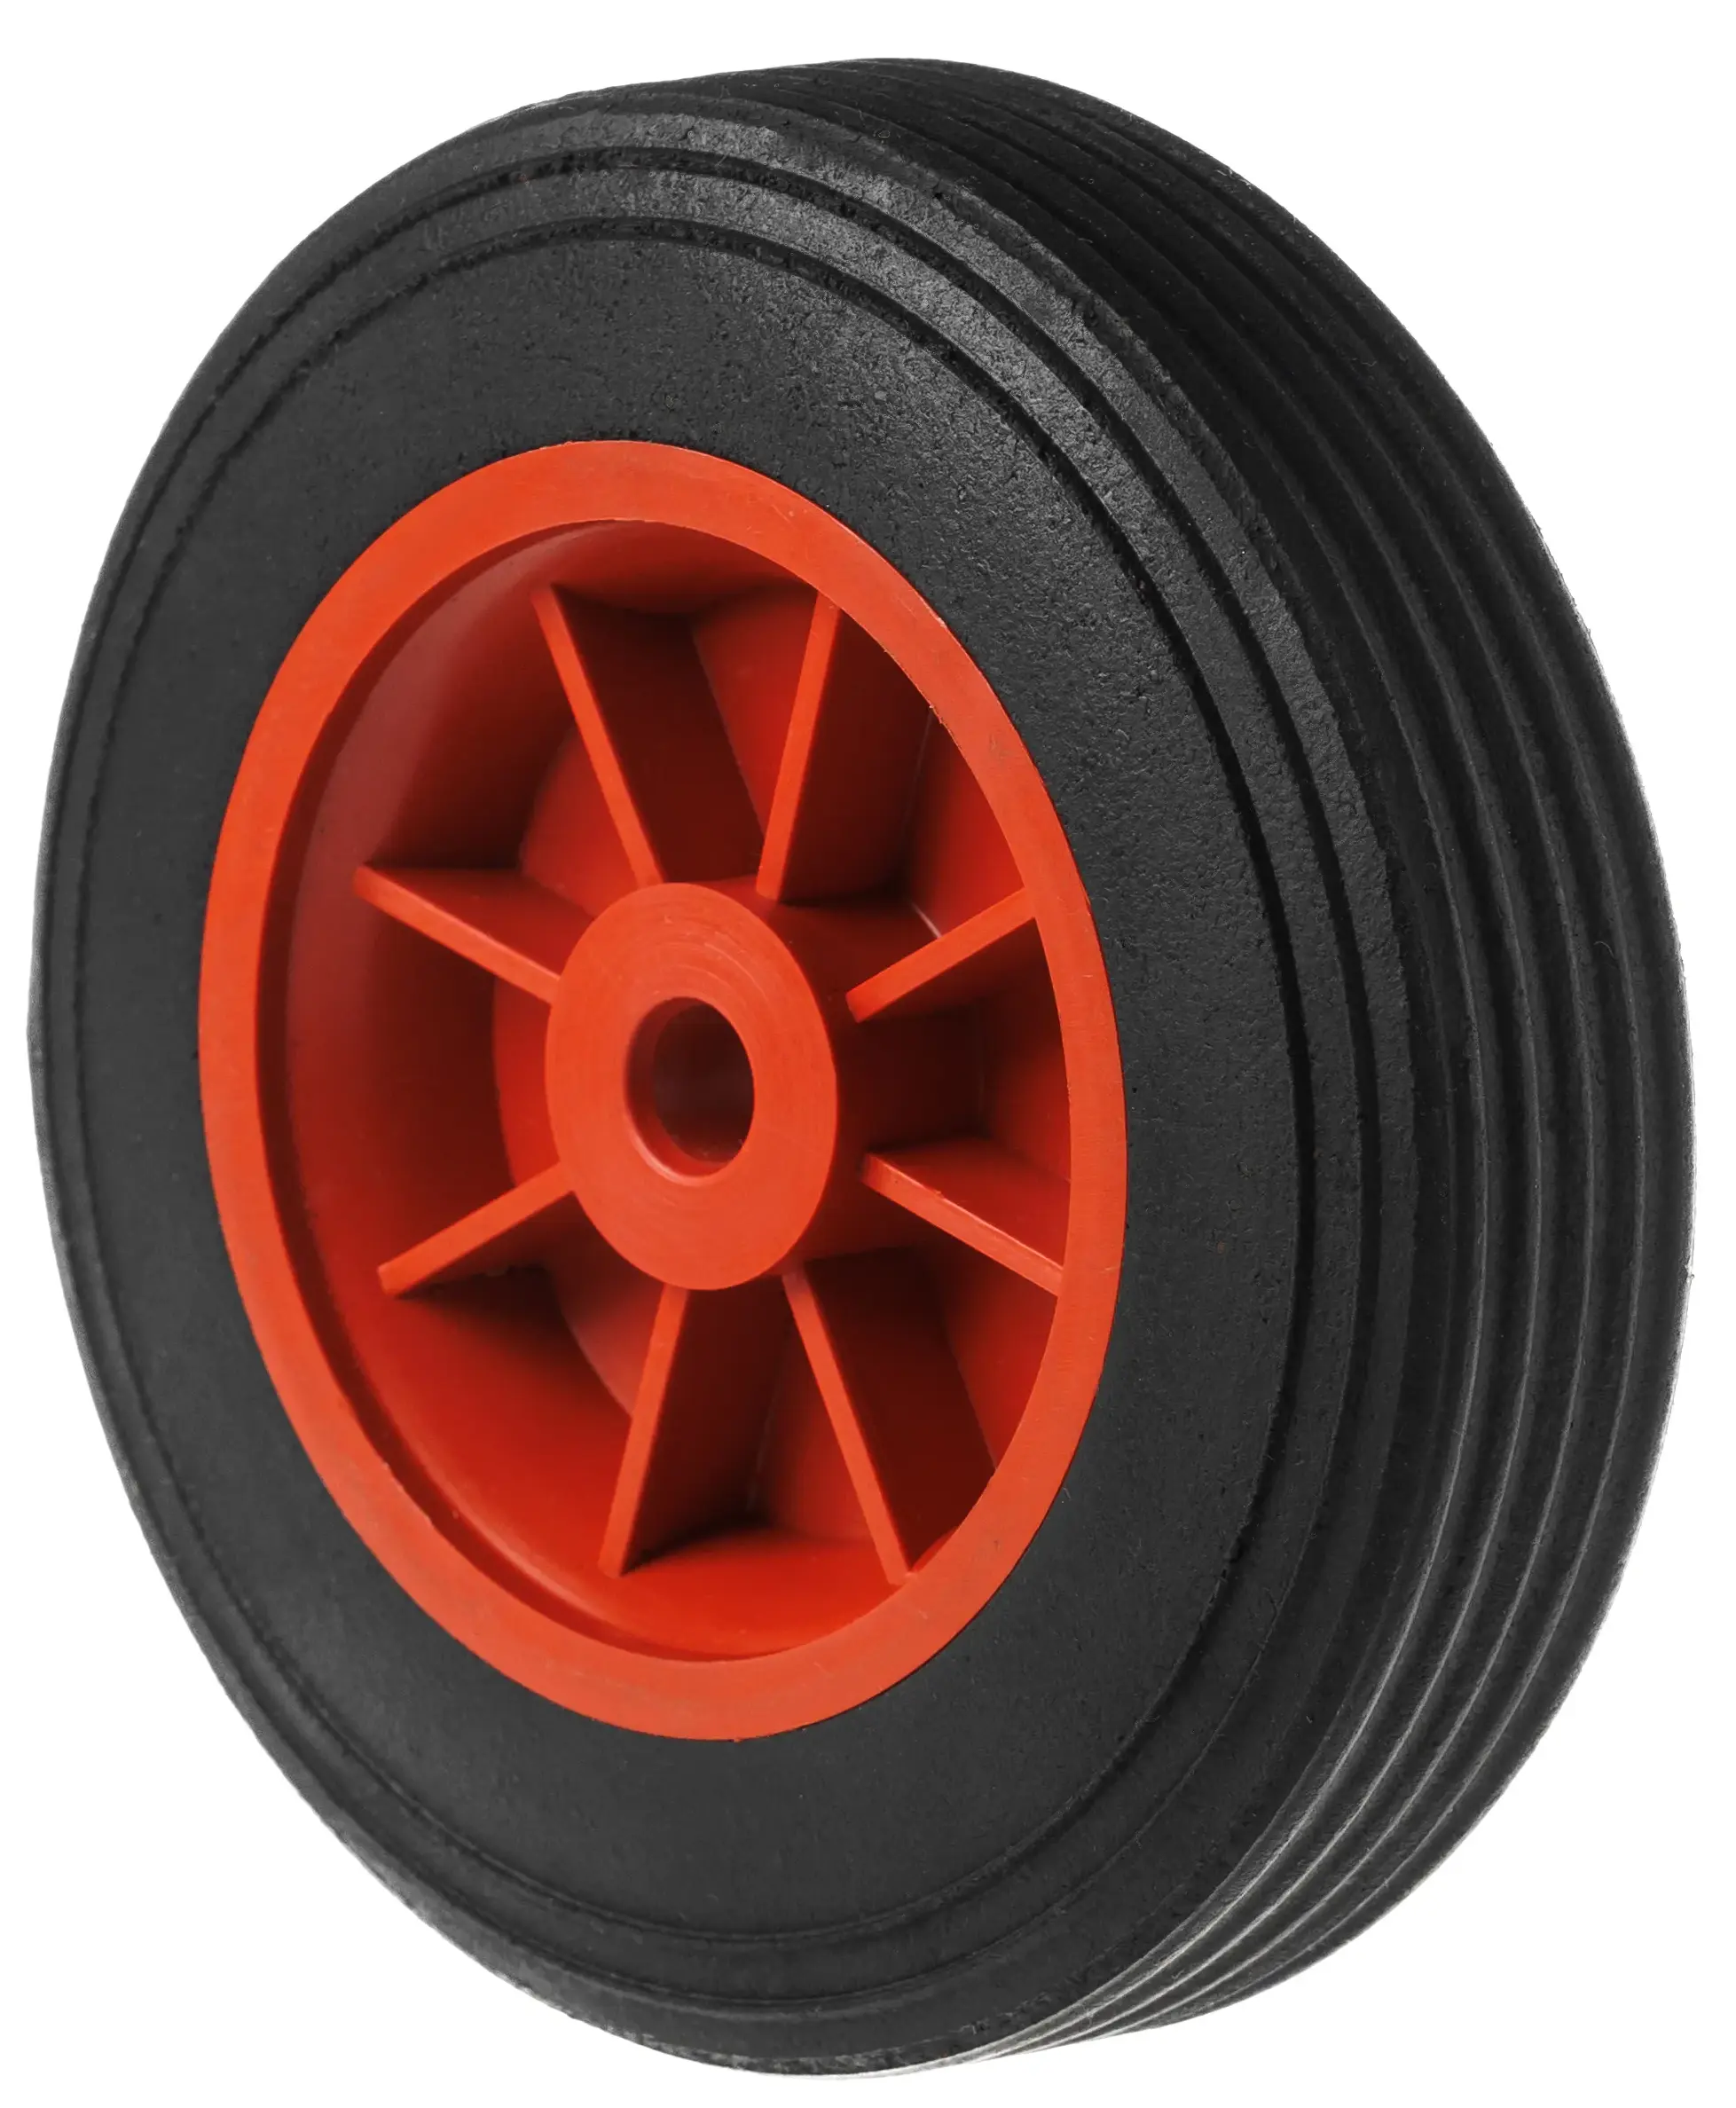 SR 1104 - Литое колесо, пласт. обод, симм. ступица, втулка скольж. (150 мм, ось 12 мм)